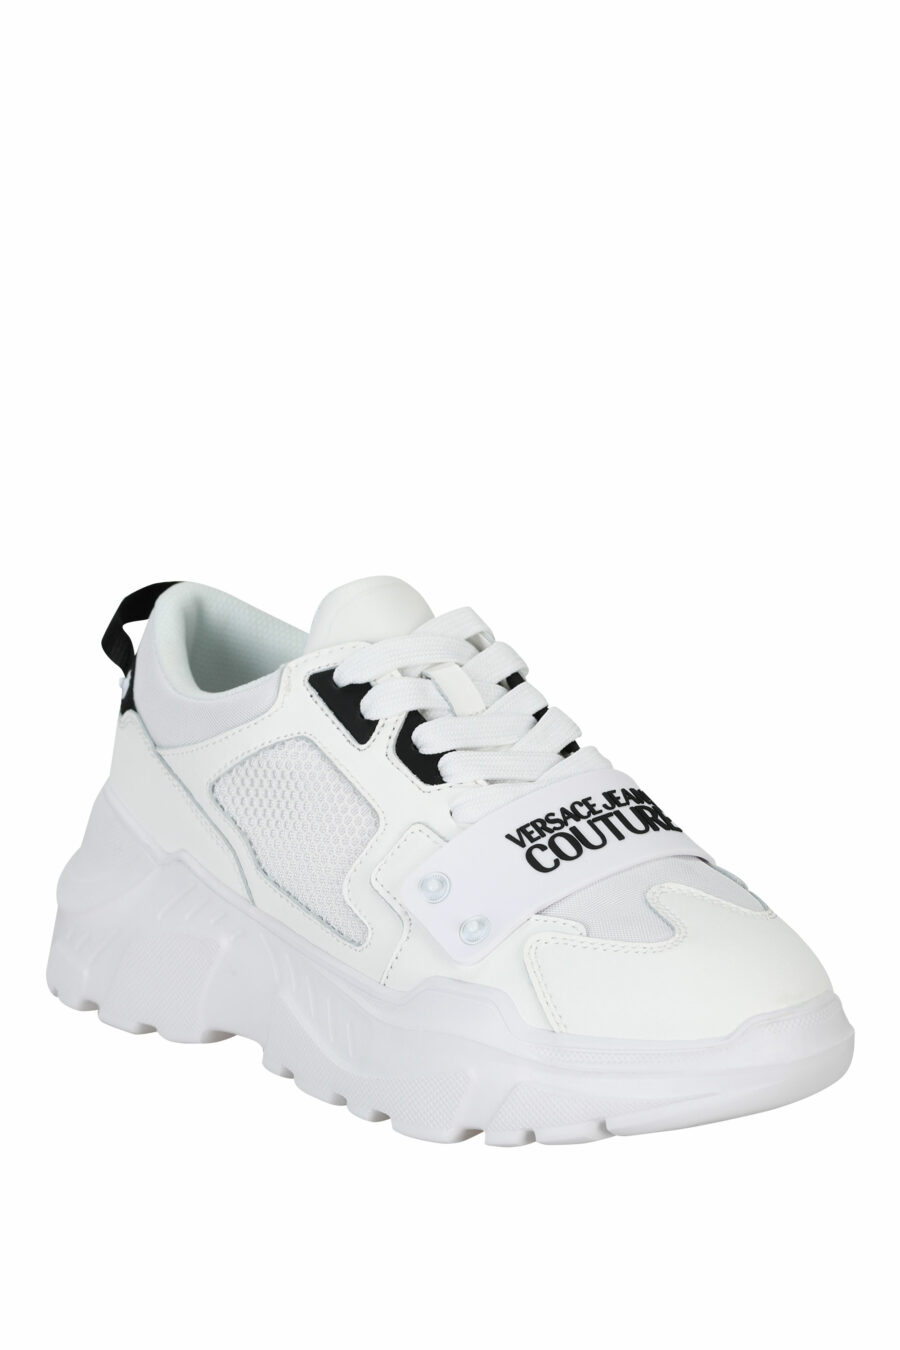 Zapatillas blancas "speedtrack" con minilogo frontal negro en goma - 8052019604337 1